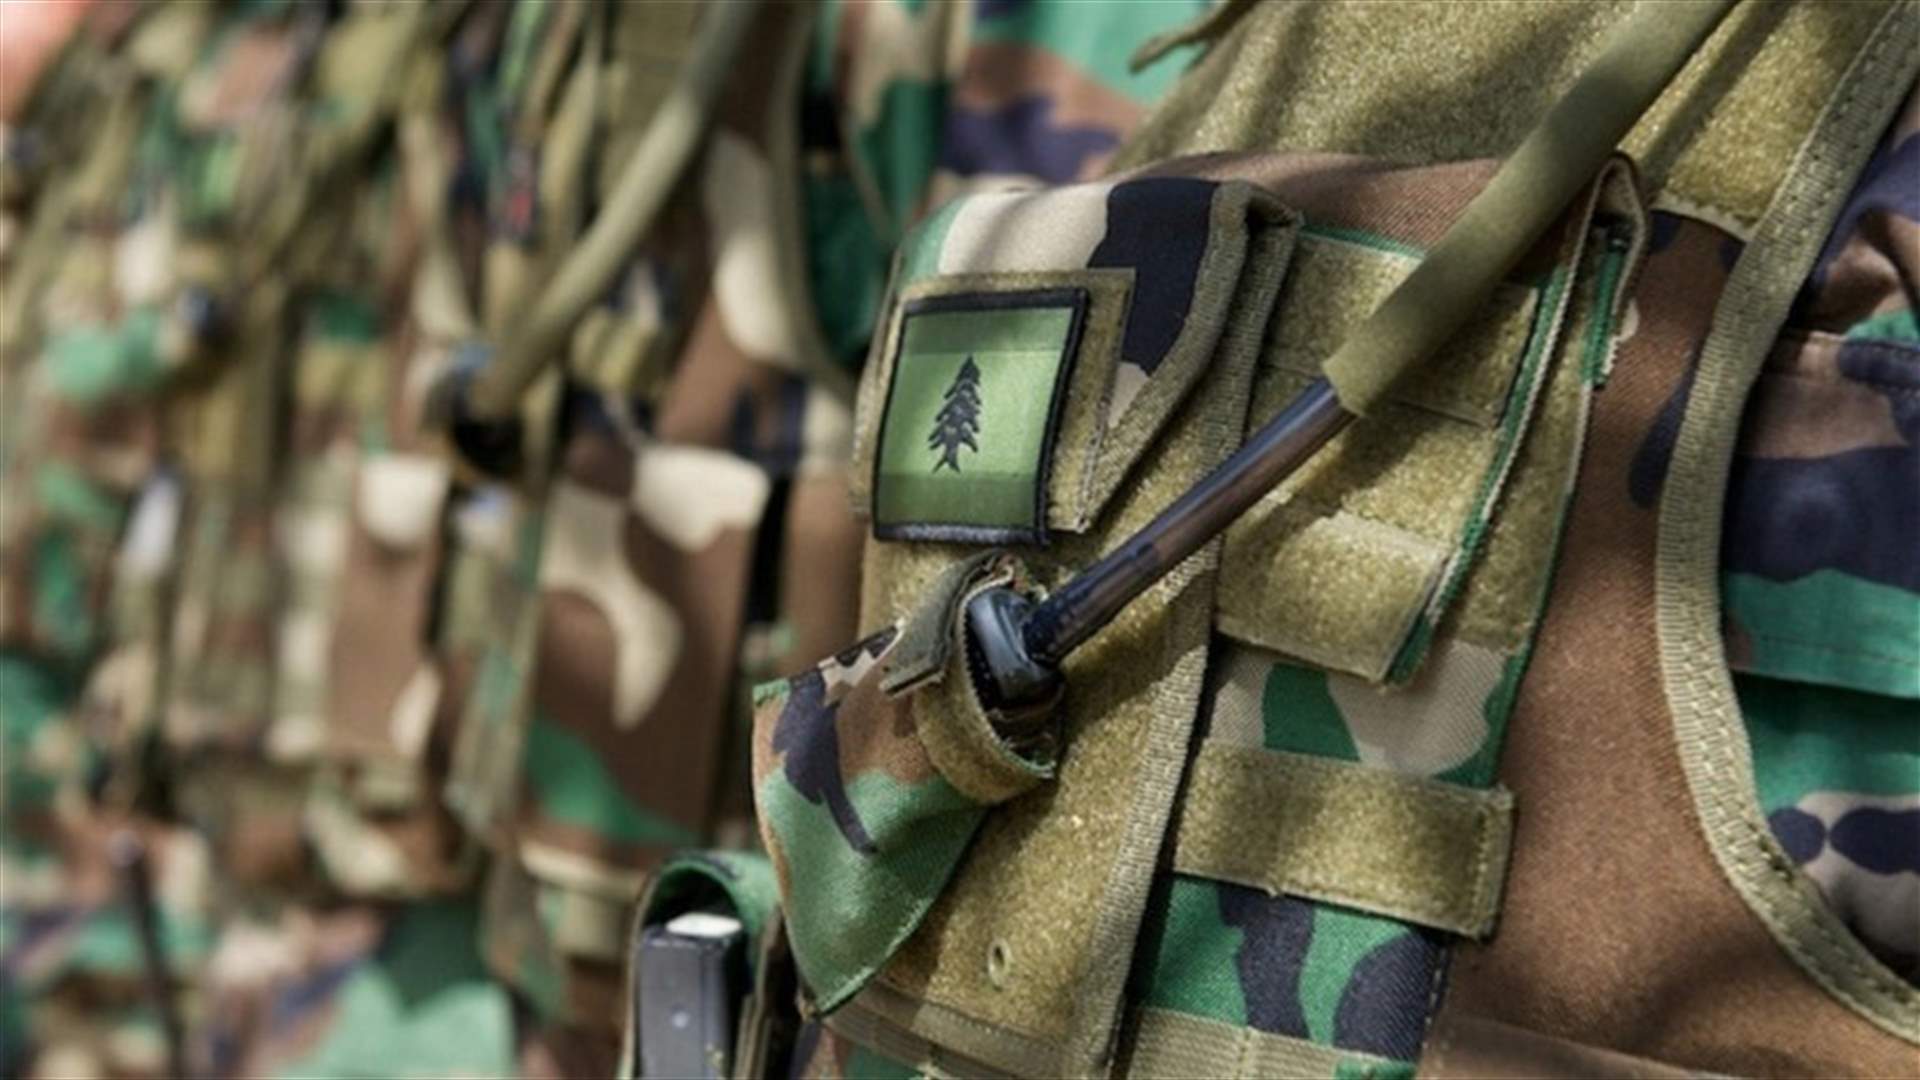 الجيش يوضح مسألة التراخيص لوسائل الاعلام: ليست جديدة وتهدف لتأمين سلامة الإعلاميين